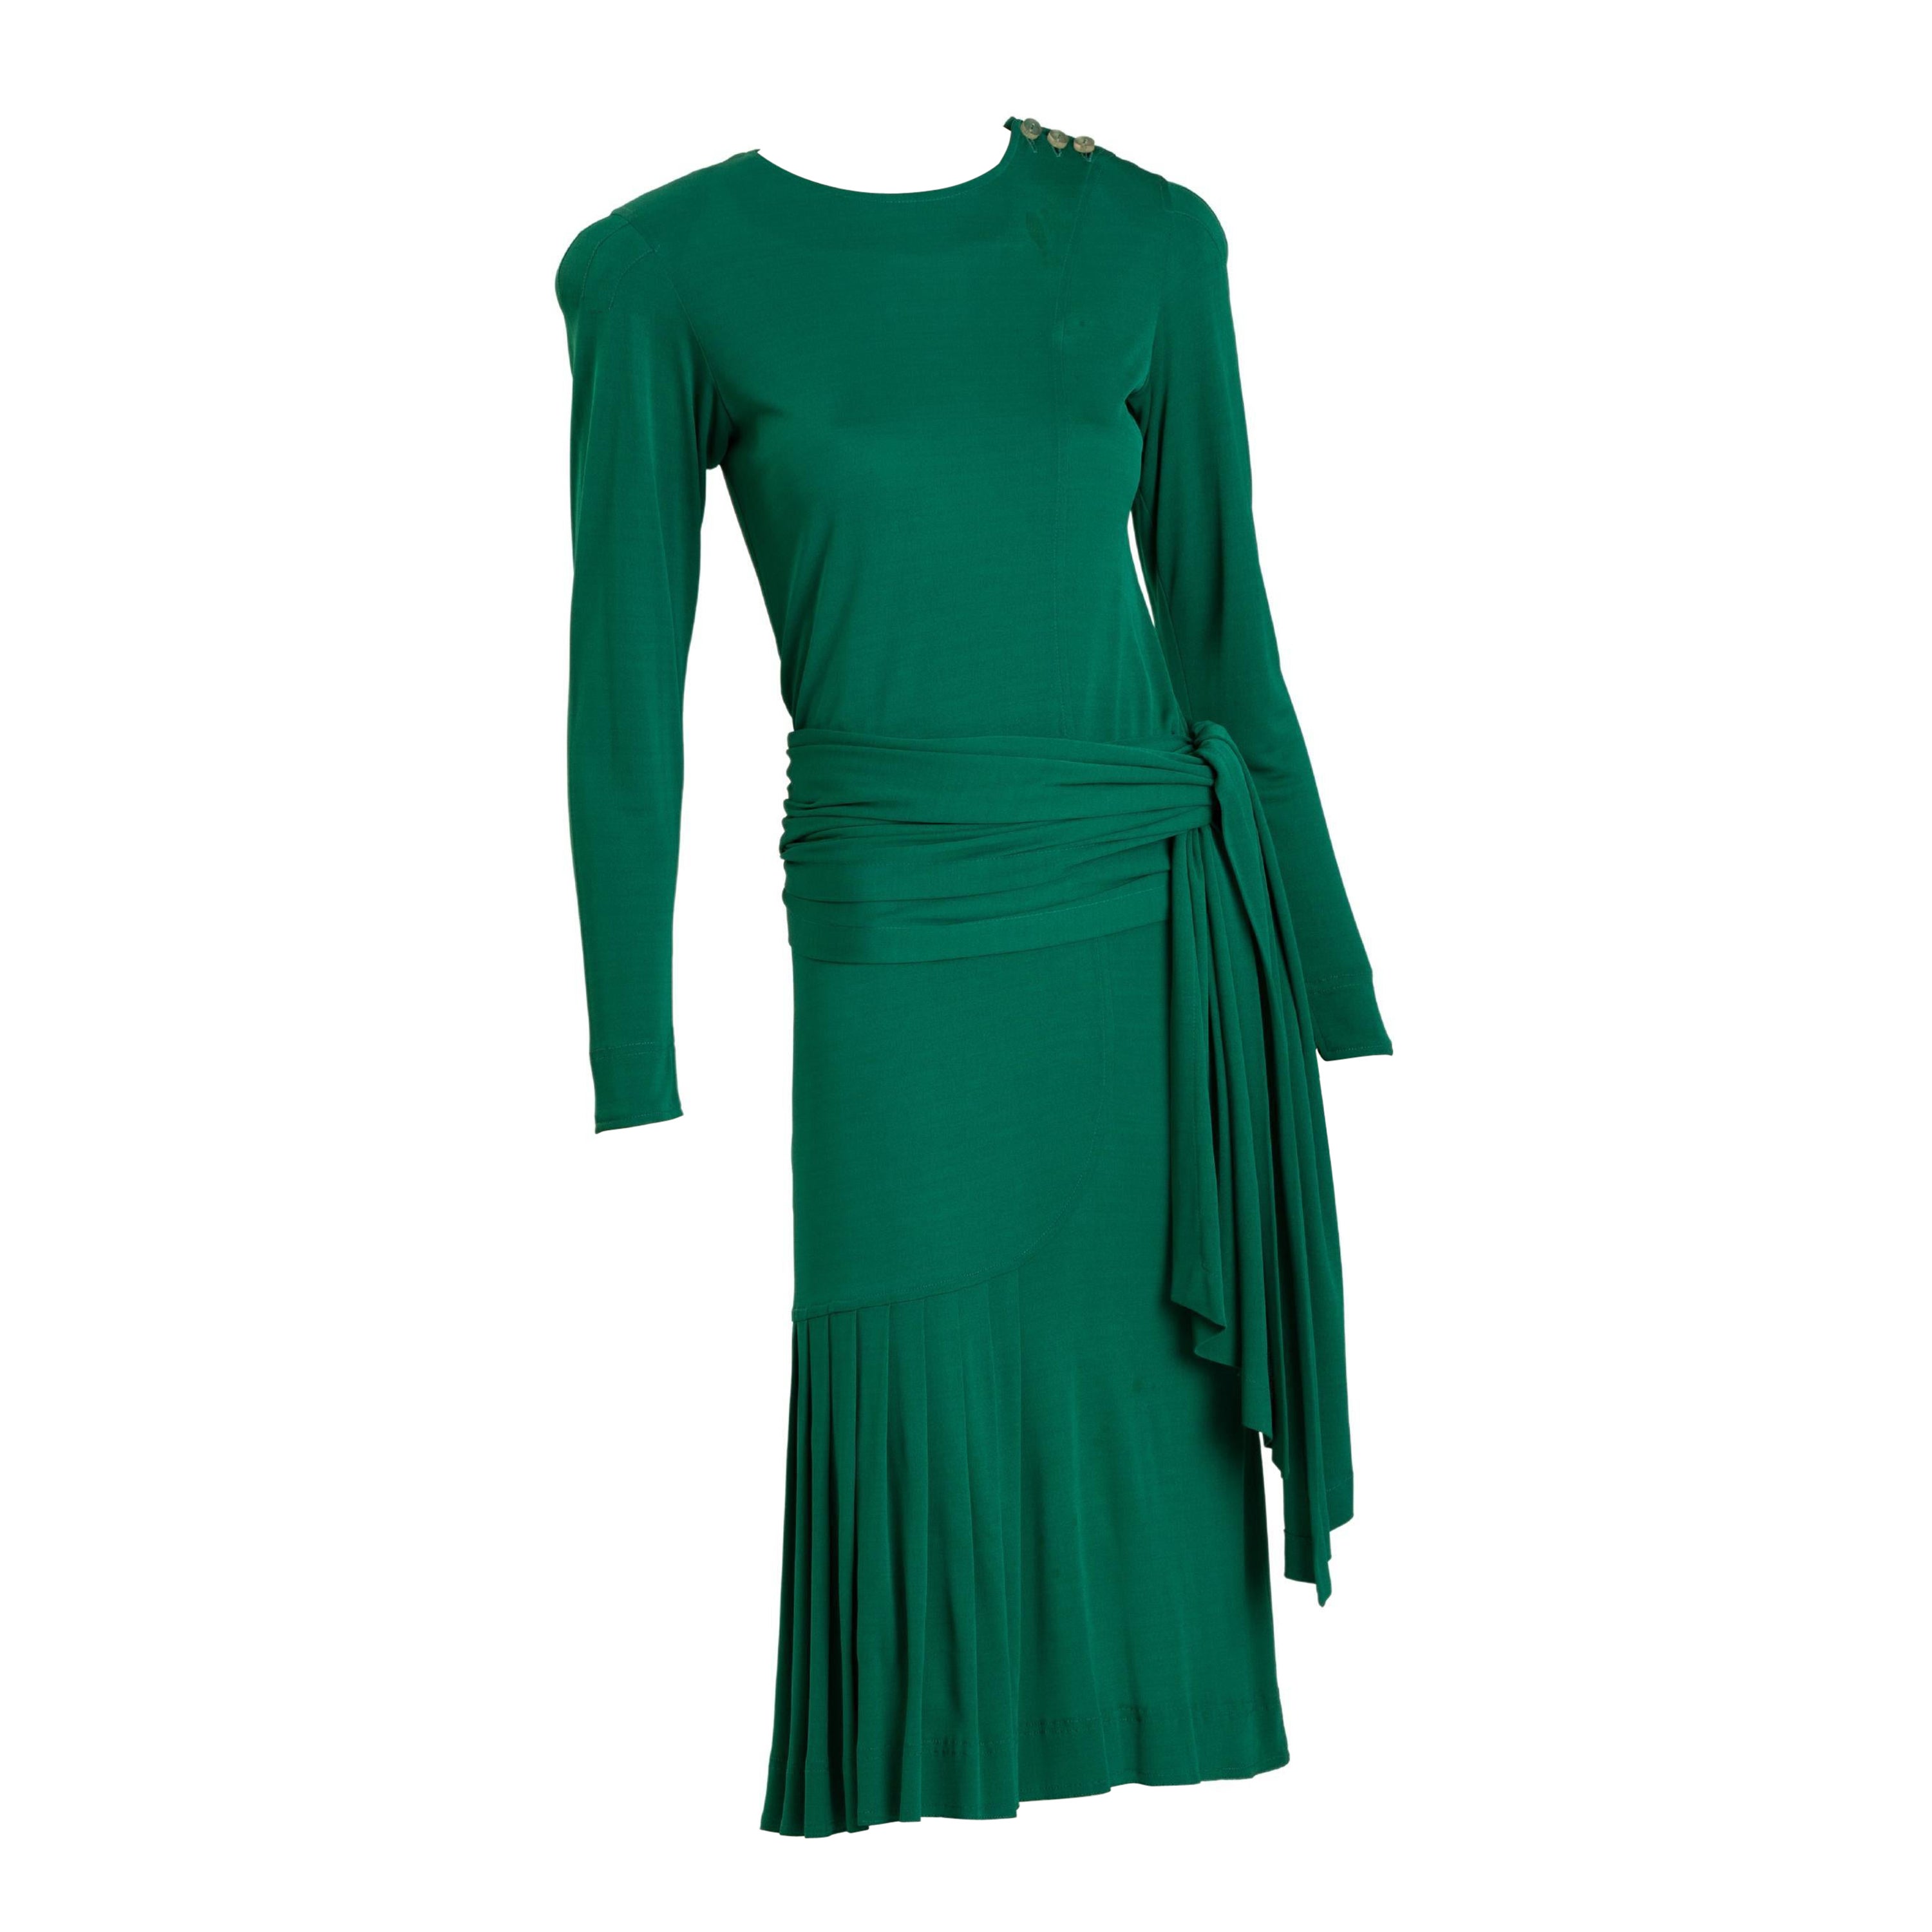 Jean Muir smaragdgrünes Jersey-Cocktailkleid mit langer Wickelschärpe. Die Schärpe kann auch als langer Schal um den Hals getragen und am unteren Rücken gebunden werden. Die Vorderseite des Kleides hat asymmetrische Falten. Drei durchsichtige Knöpfe